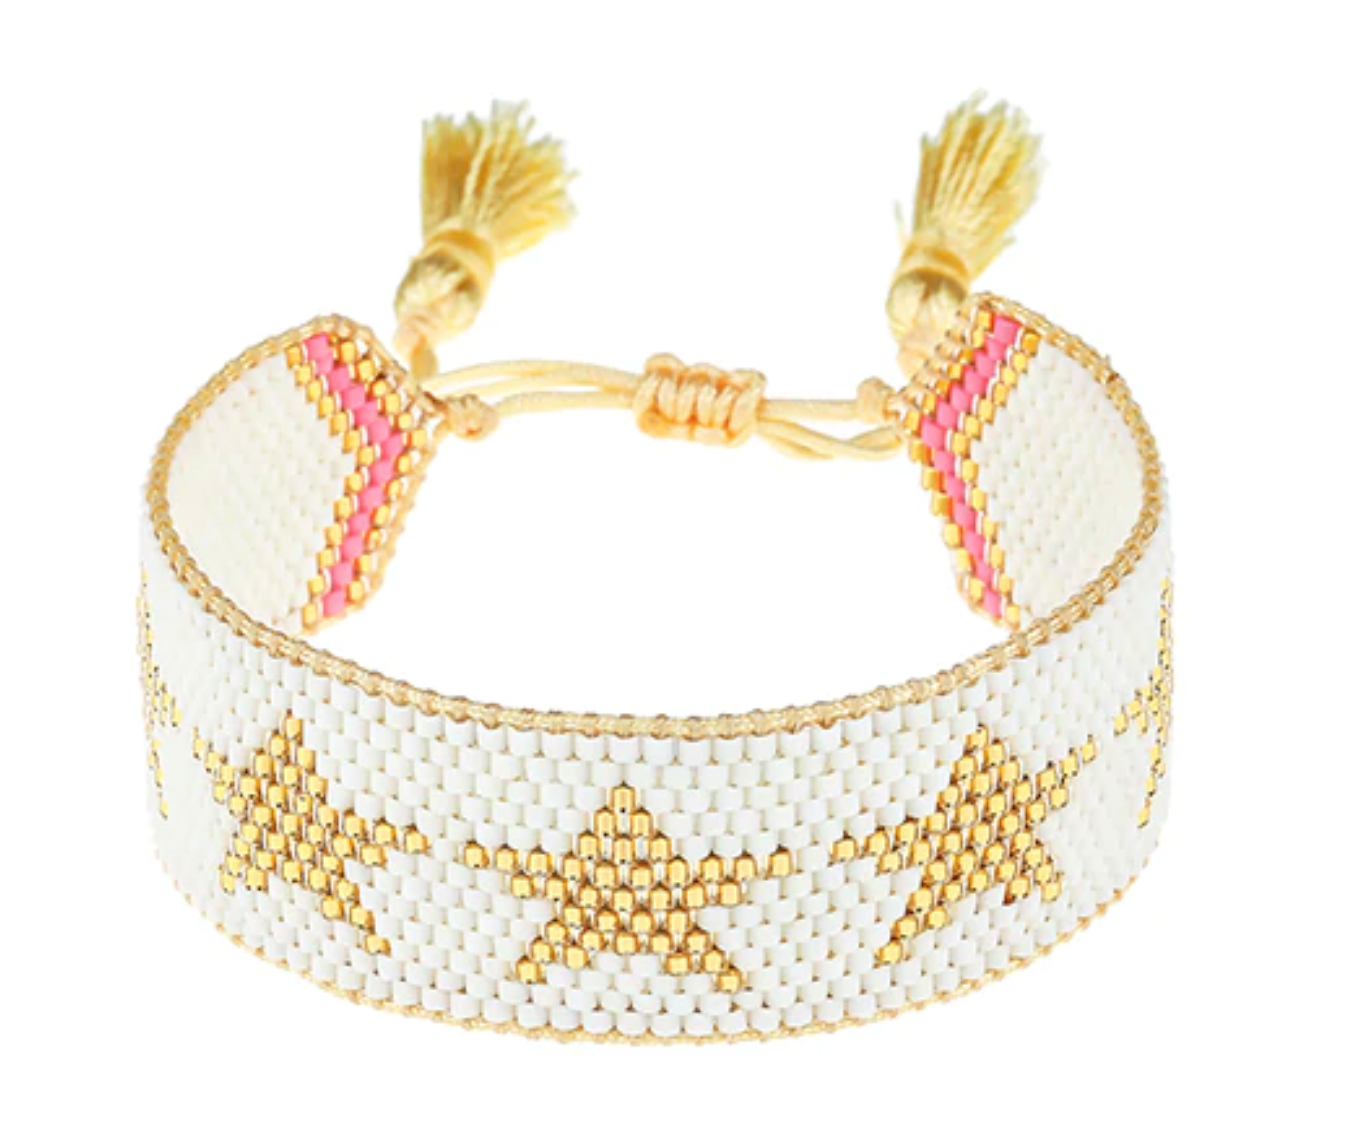 White/Gold Stars Beaded Bracelet